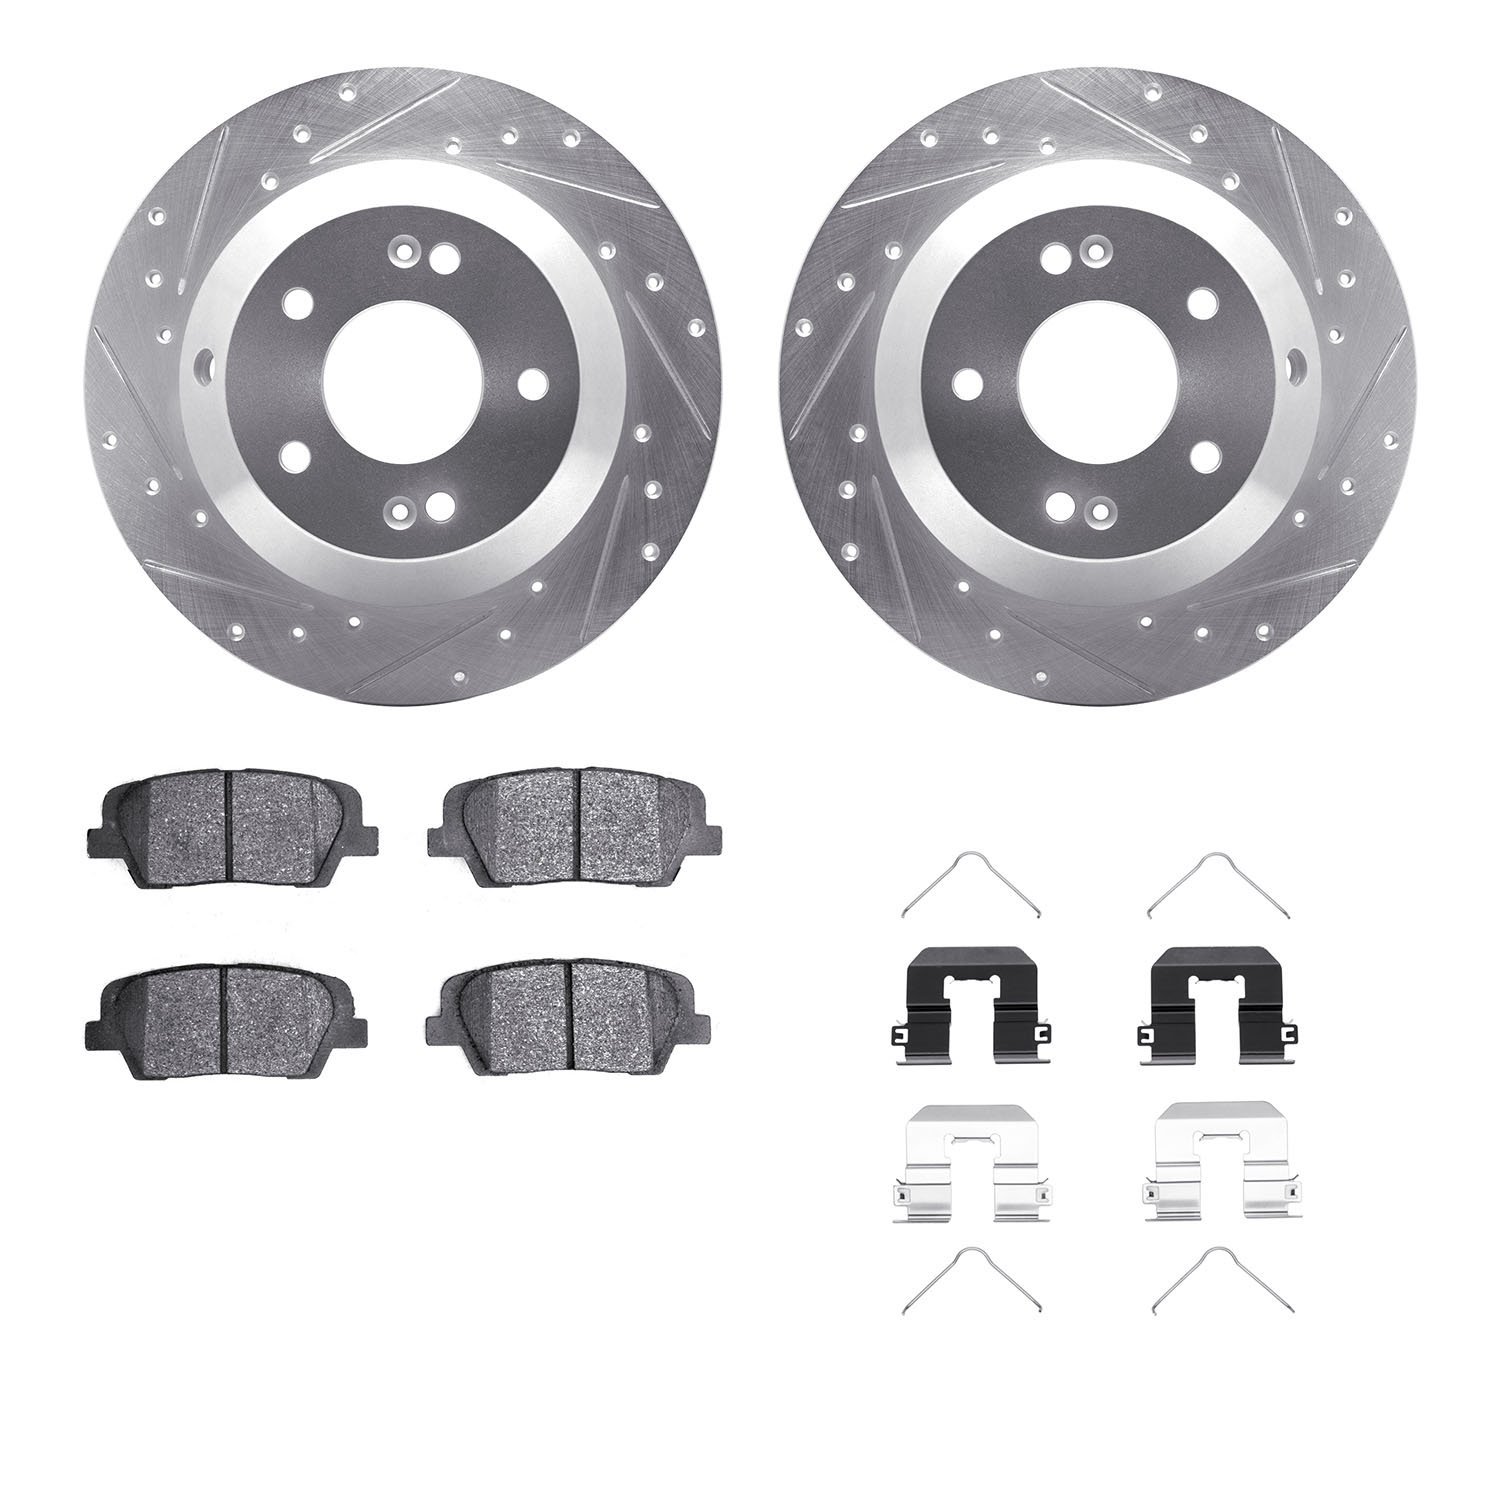 7312-21042 Drilled/Slotted Brake Rotor with 3000-Series Ceramic Brake Pads Kit & Hardware [Silver], 2015-2020 Kia/Hyundai/Genesi